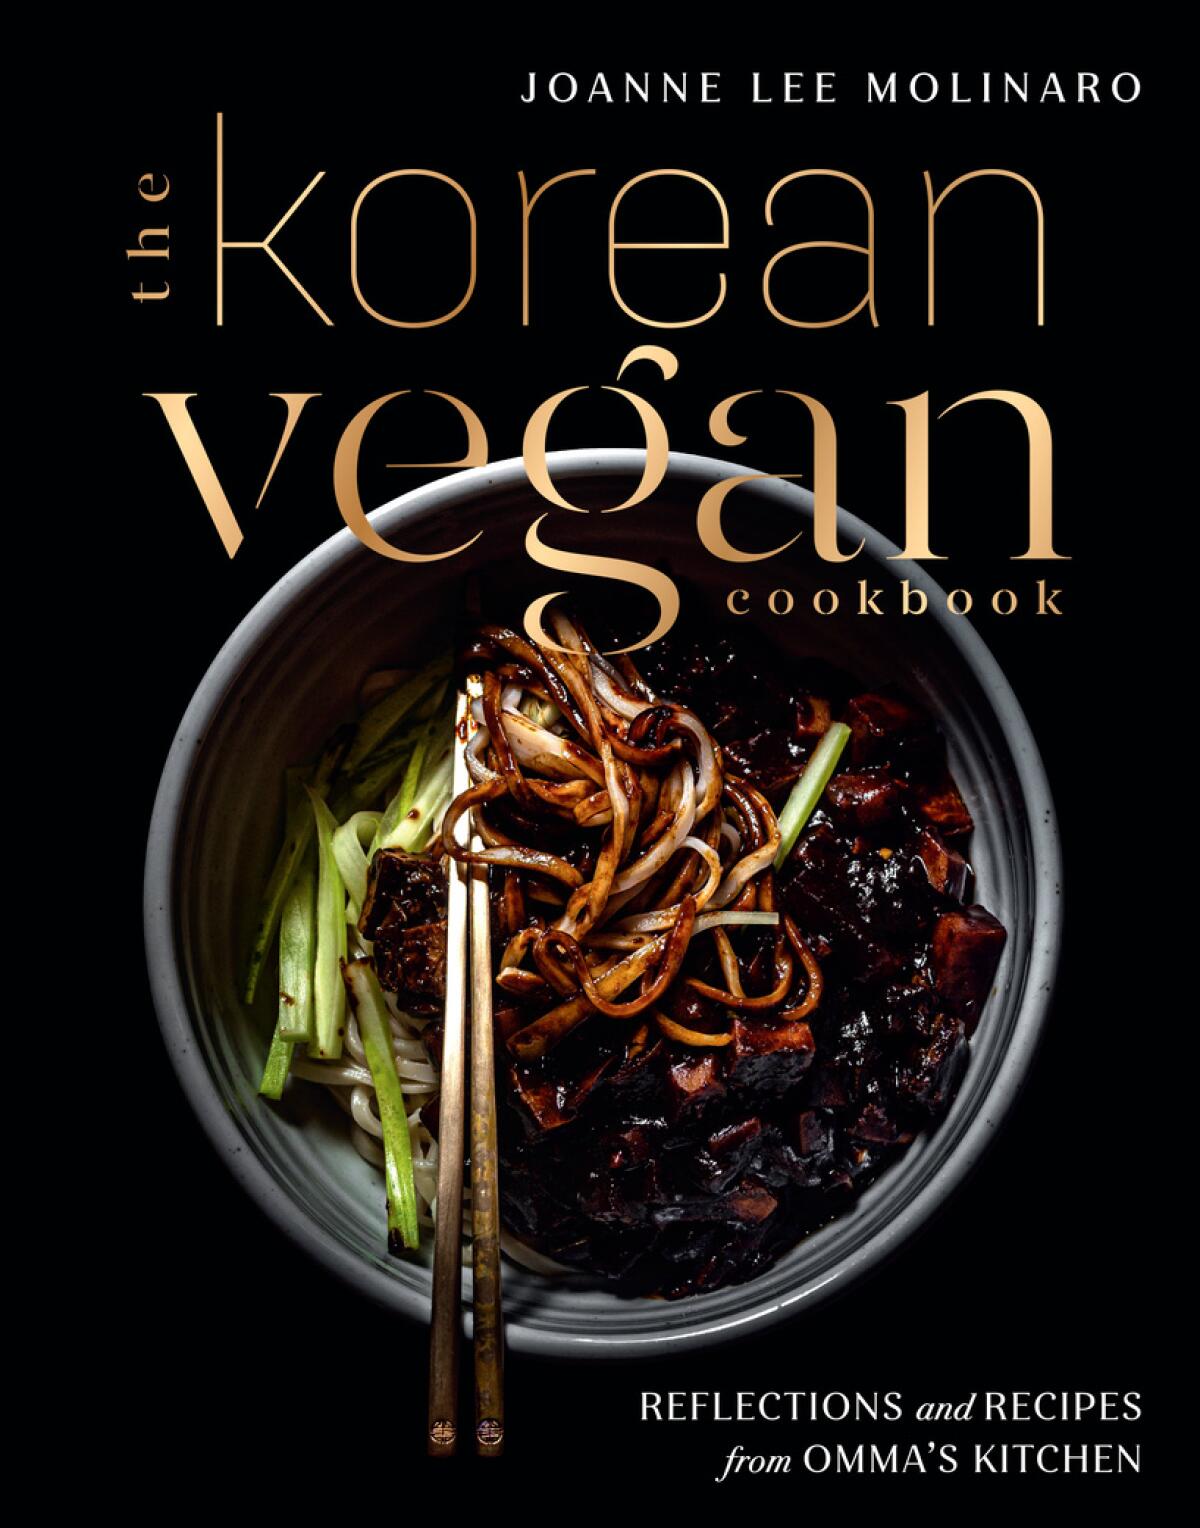 "The Korean Vegan Cookbook"